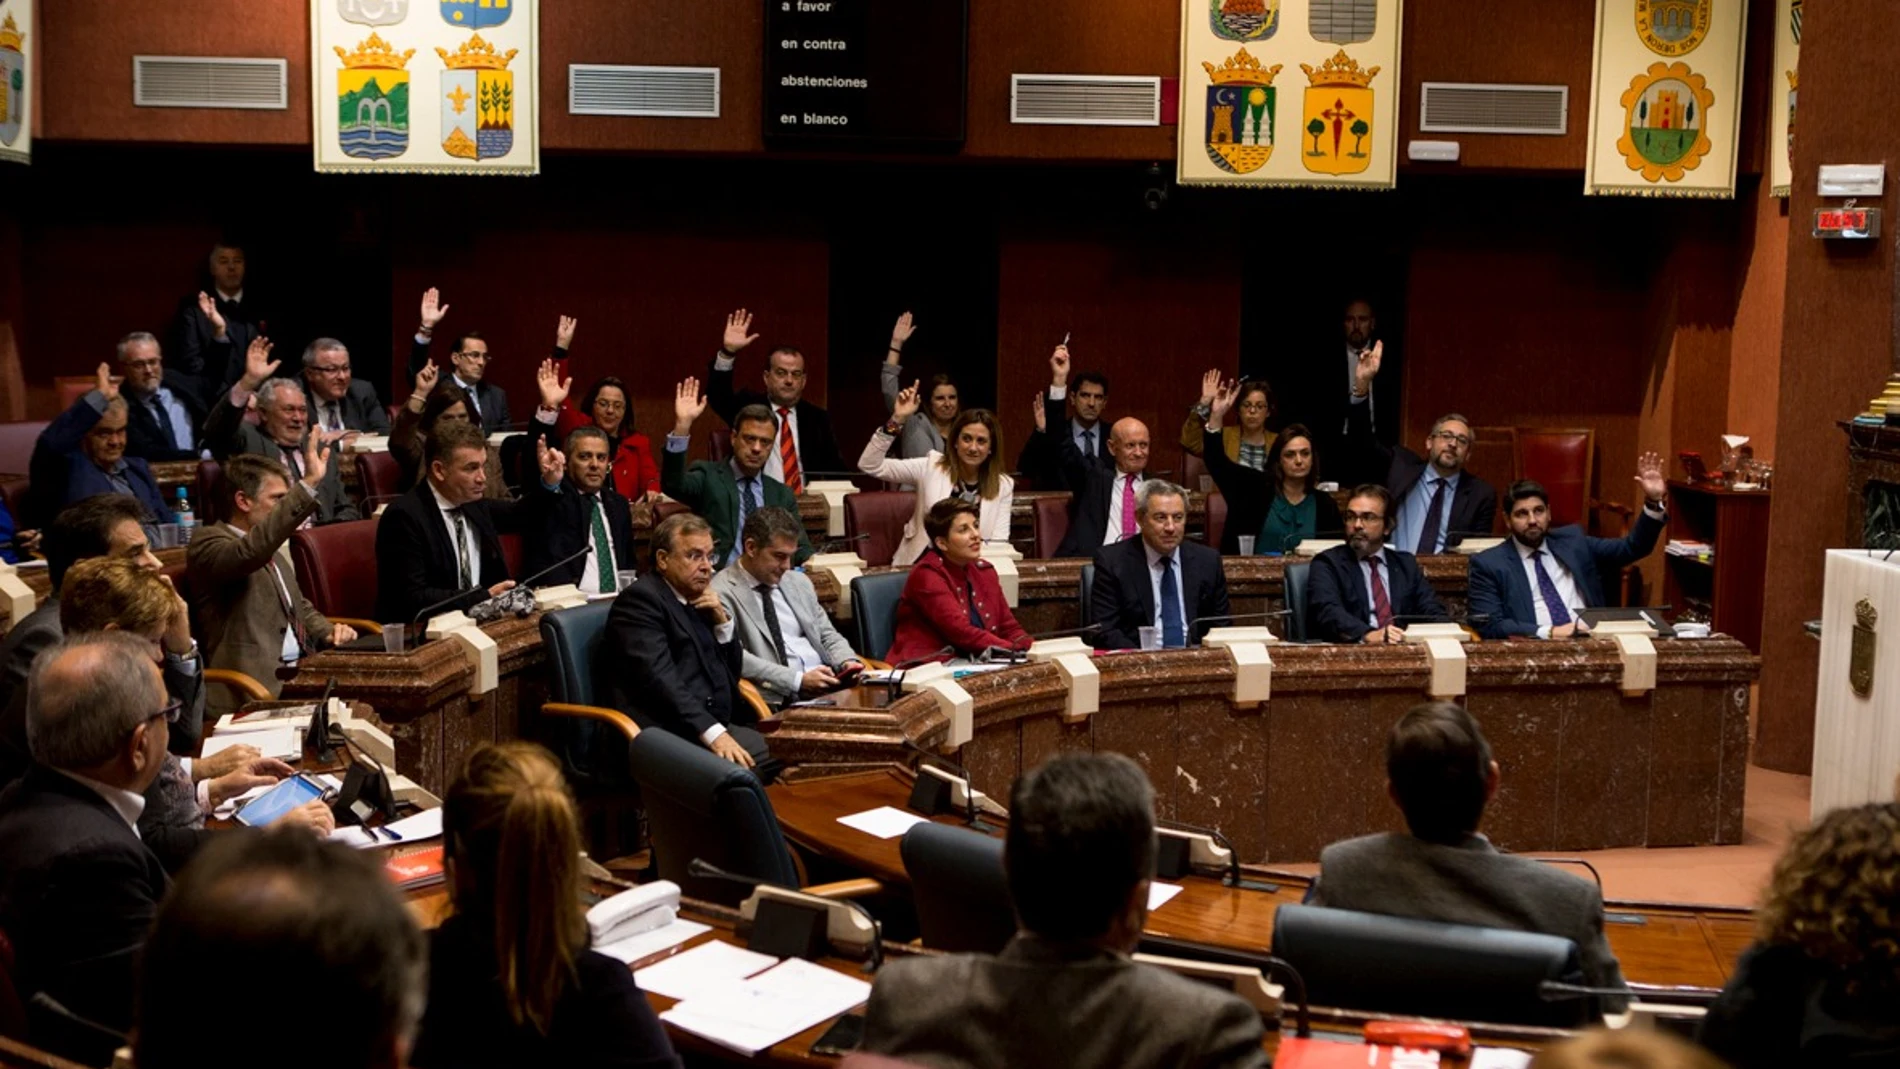 Imagen de la bancada popular durante la votación, rechazando las enmiendas a la totalidad de PSOE y Podemos, ayer en la sesión parlamentaria en la Asamblea Regional